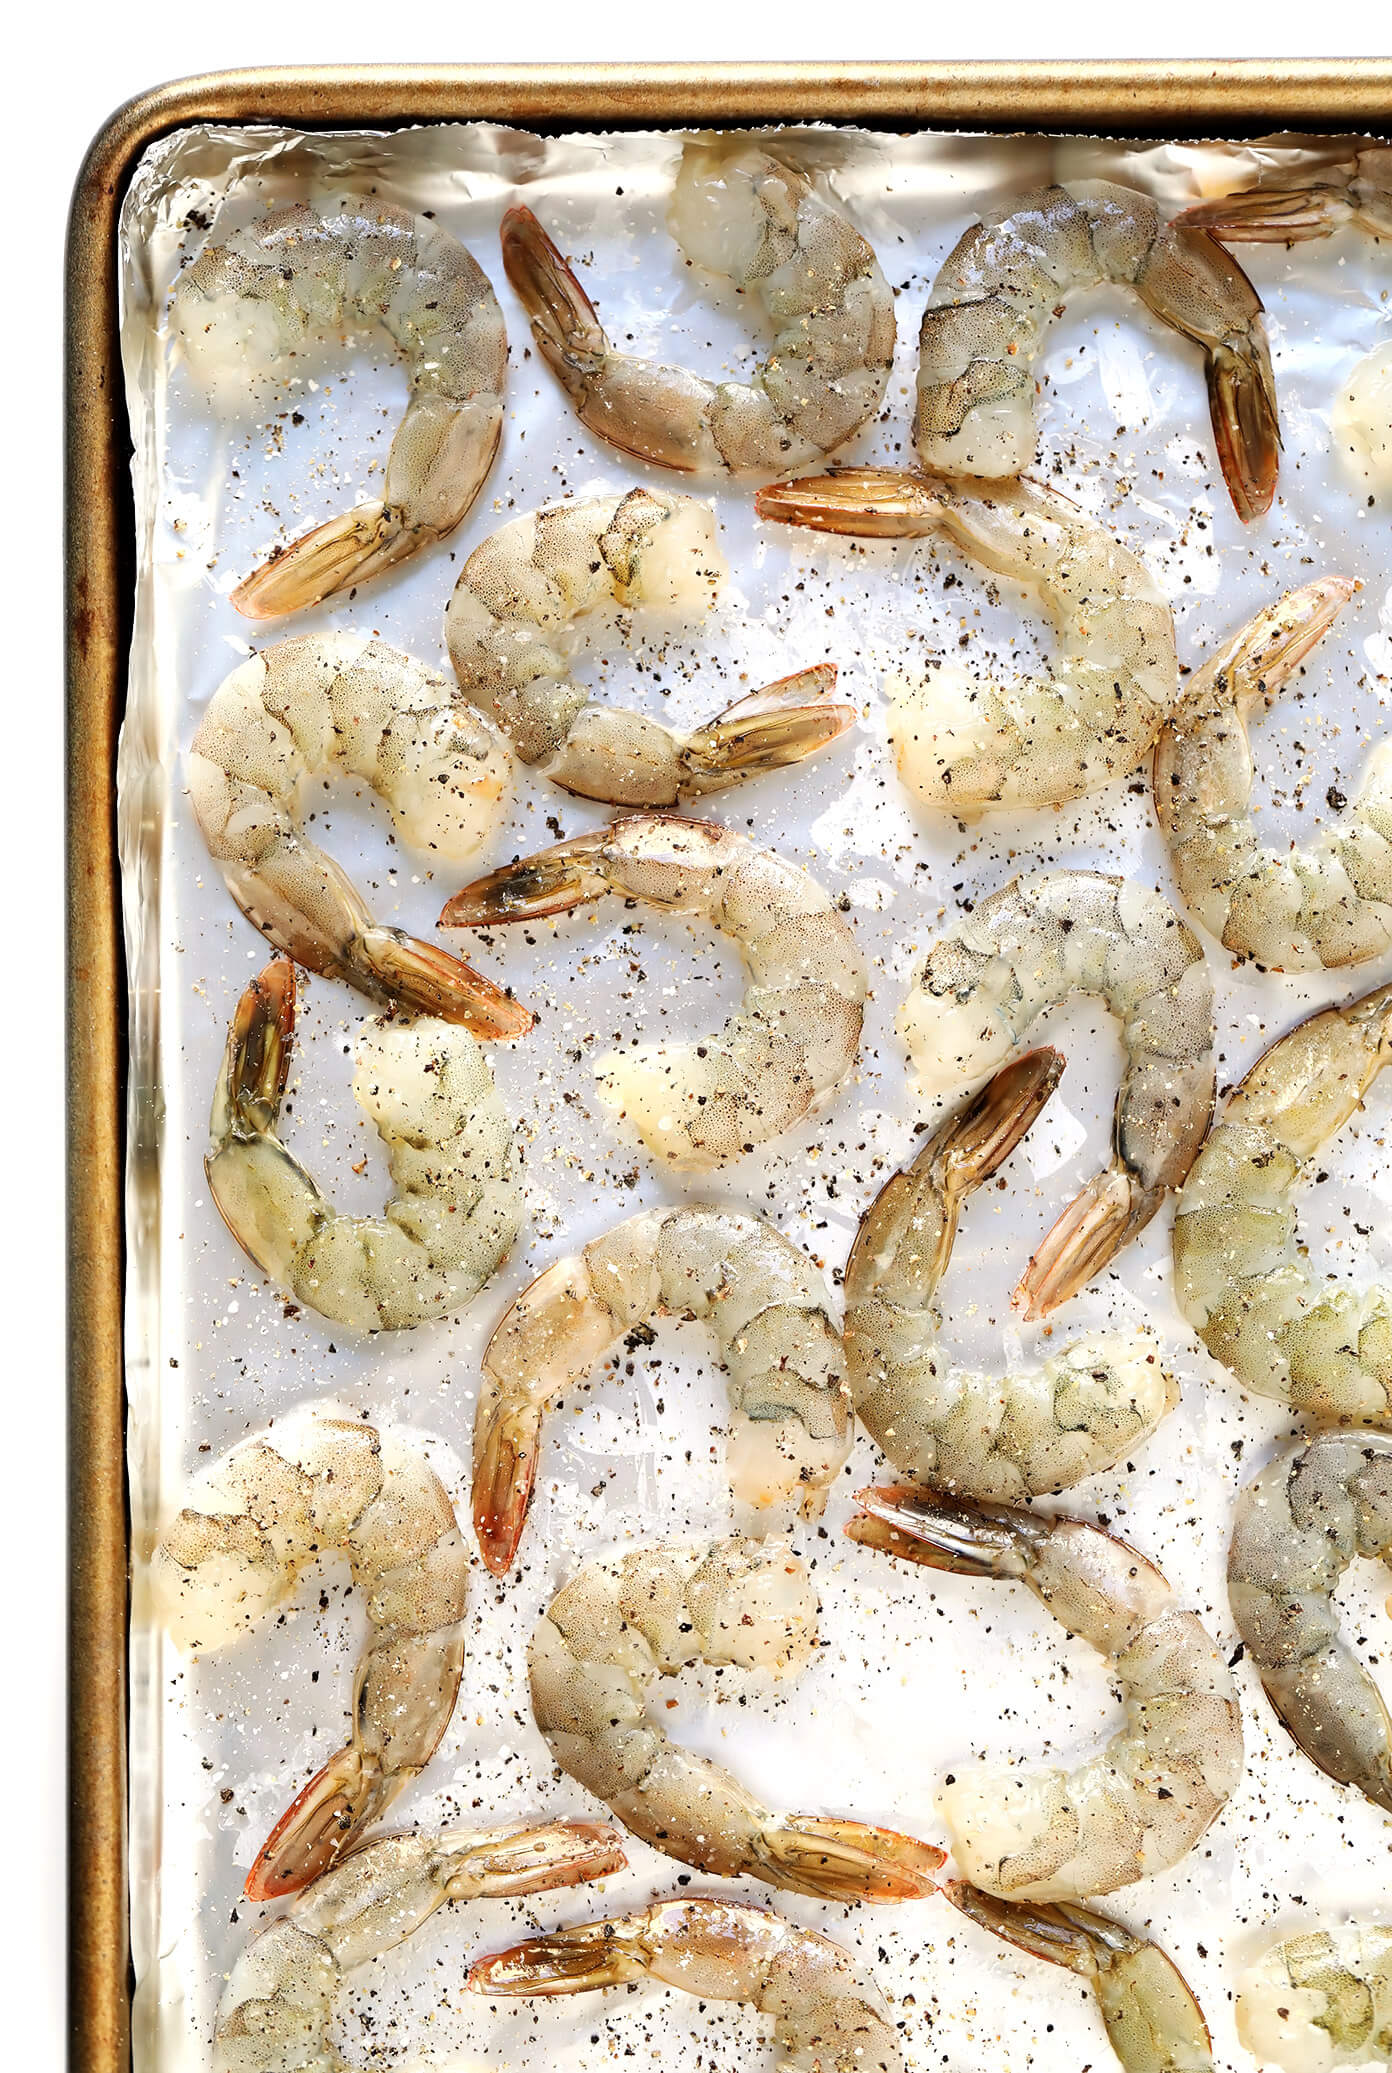 Raw Shrimp Prep | Baked Shrimp Recipe